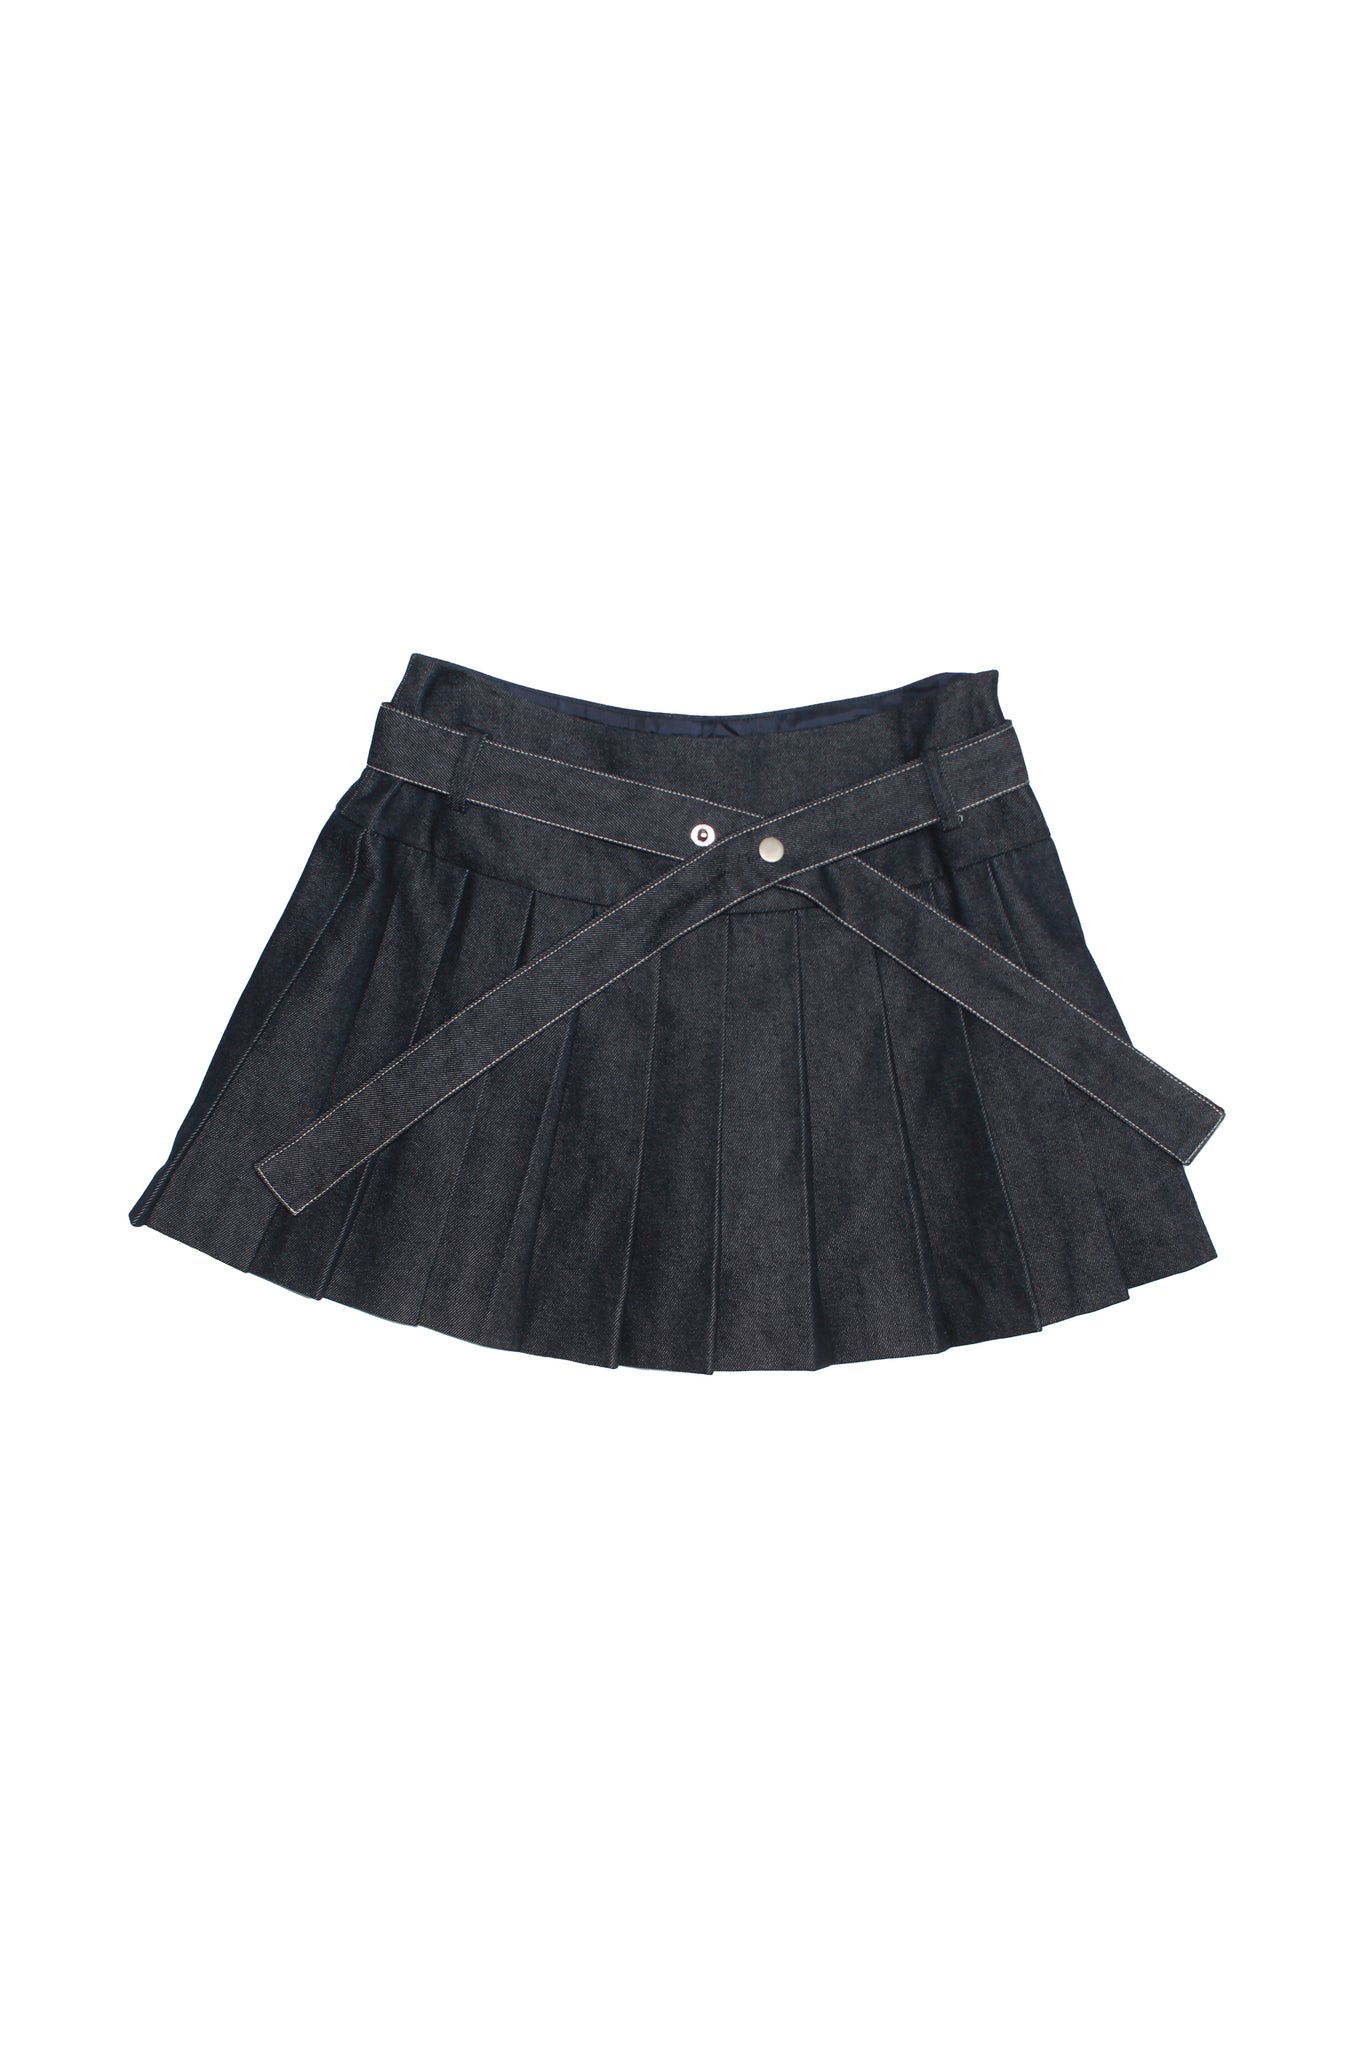 Frill Pleats Mini Skirt in Blue Denim